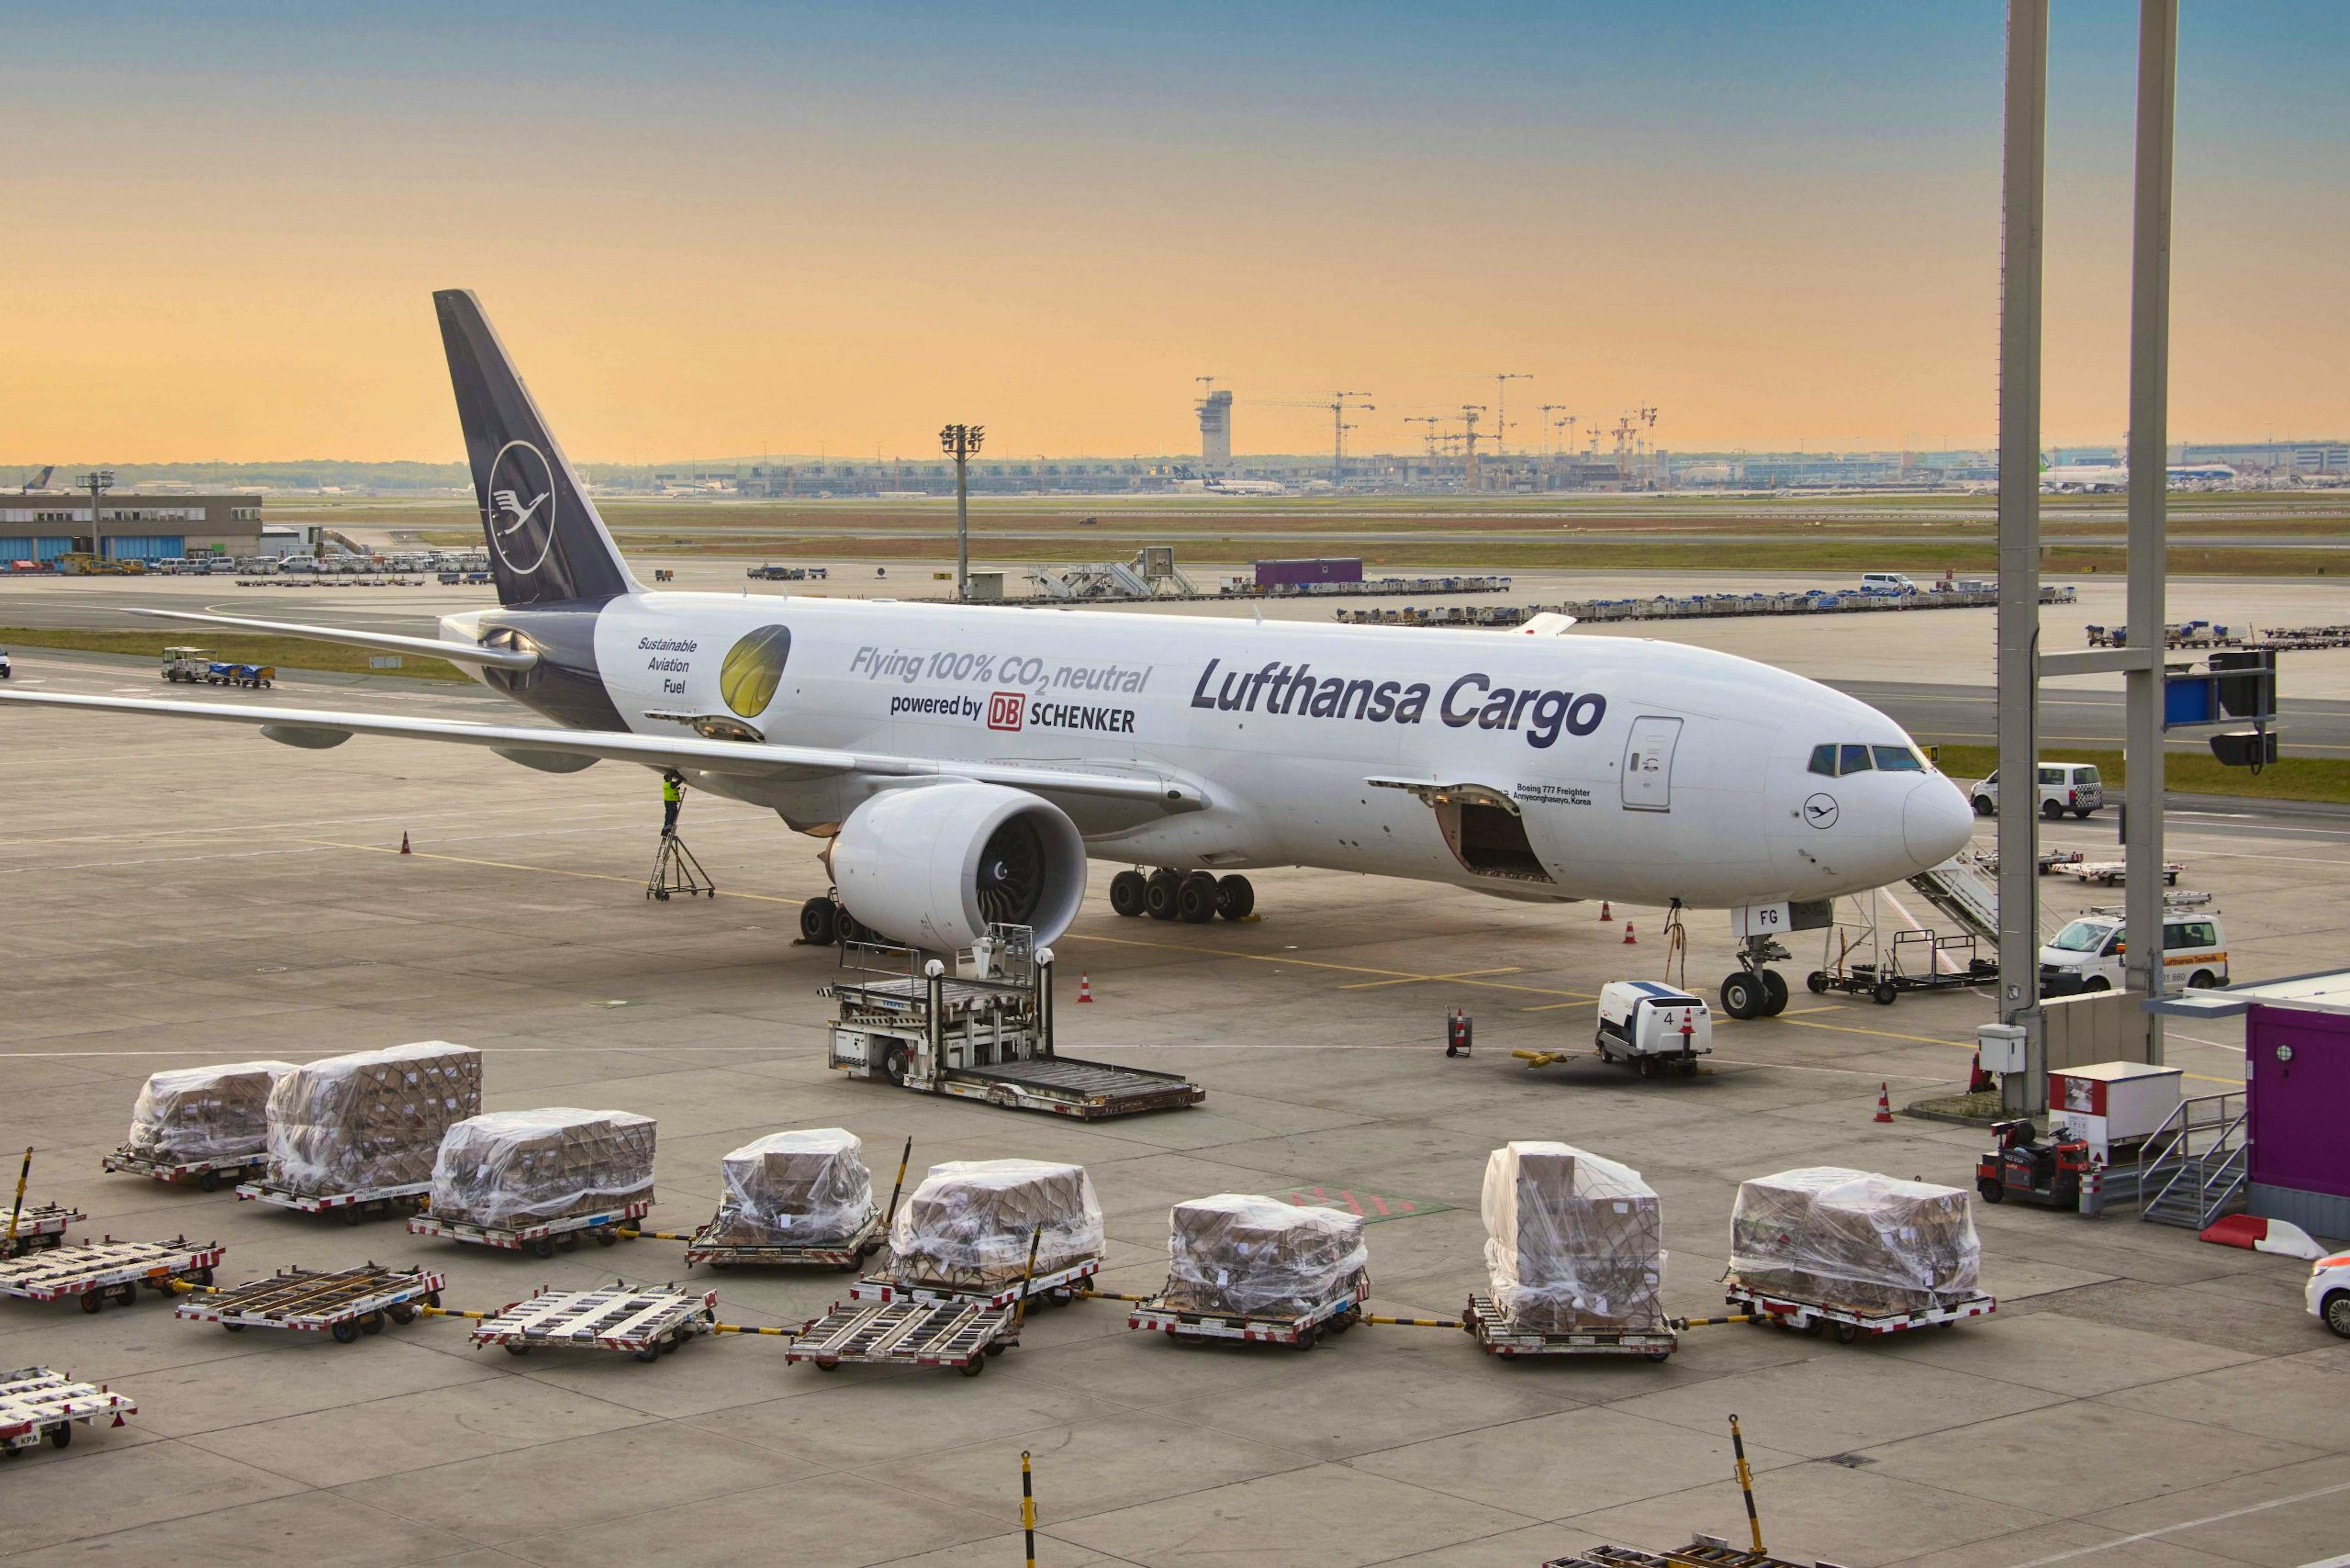 D Alfg Boeing 777 F Von Lufthansa Cargo Bekommt Öko Siegel Aerotelegraph